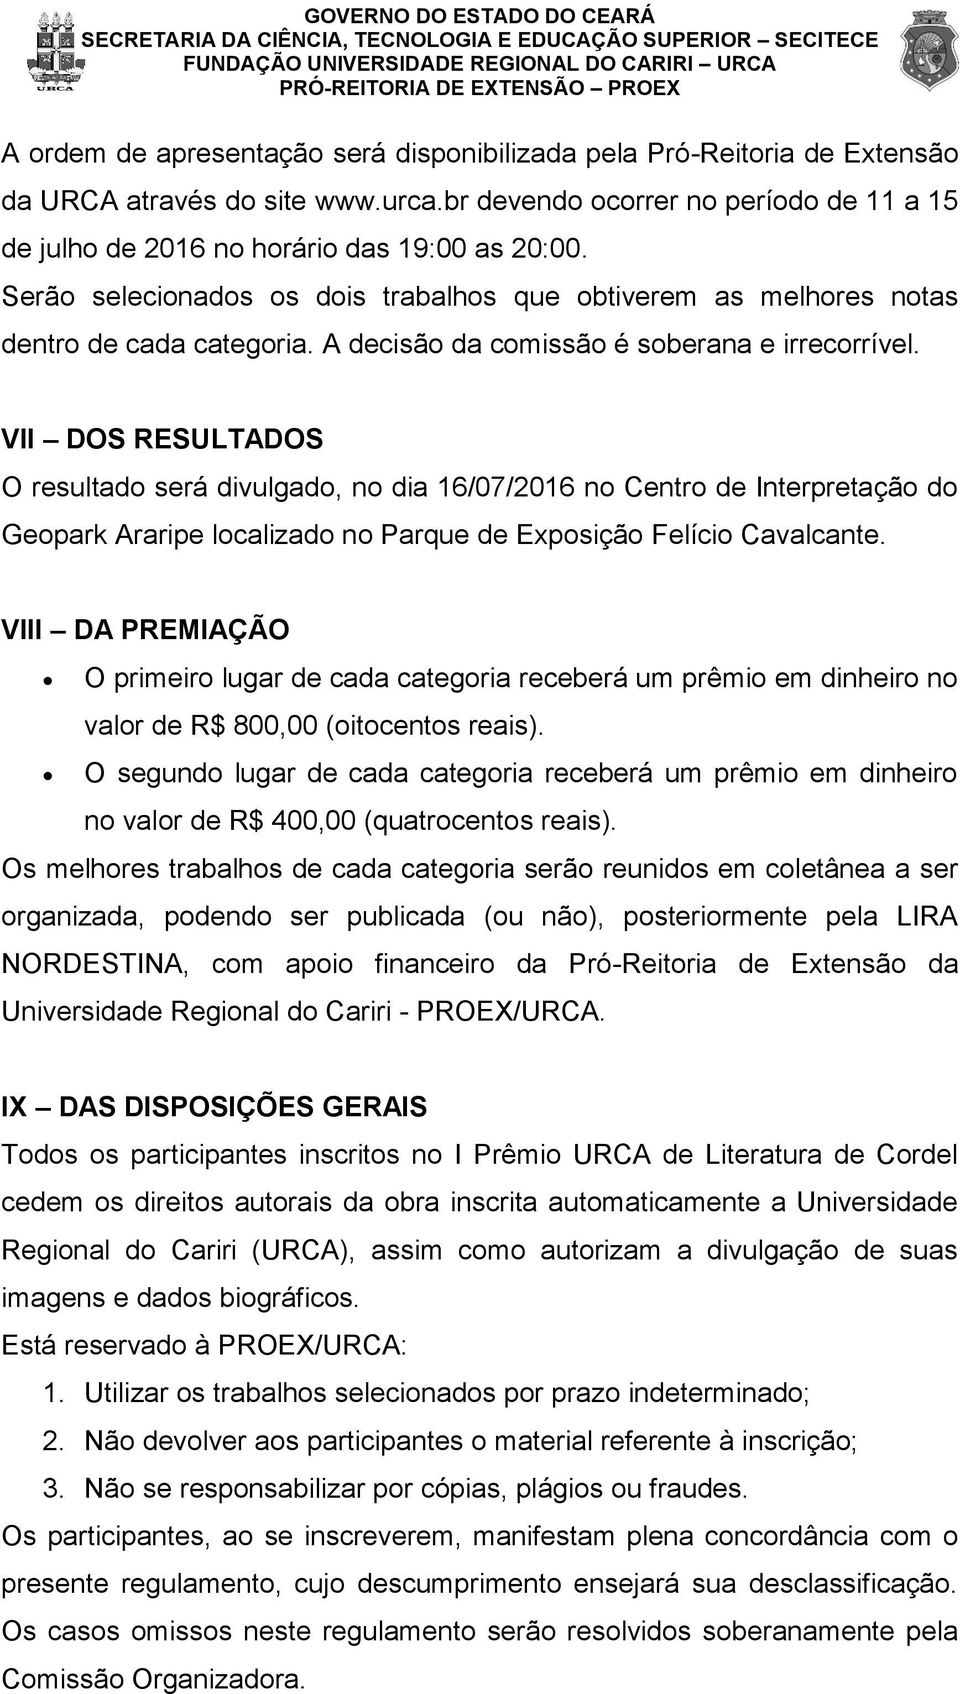 VII DOS RESULTADOS O resultado será divulgado, no dia 16/07/2016 no Centro de Interpretação do Geopark Araripe localizado no Parque de Exposição Felício Cavalcante.